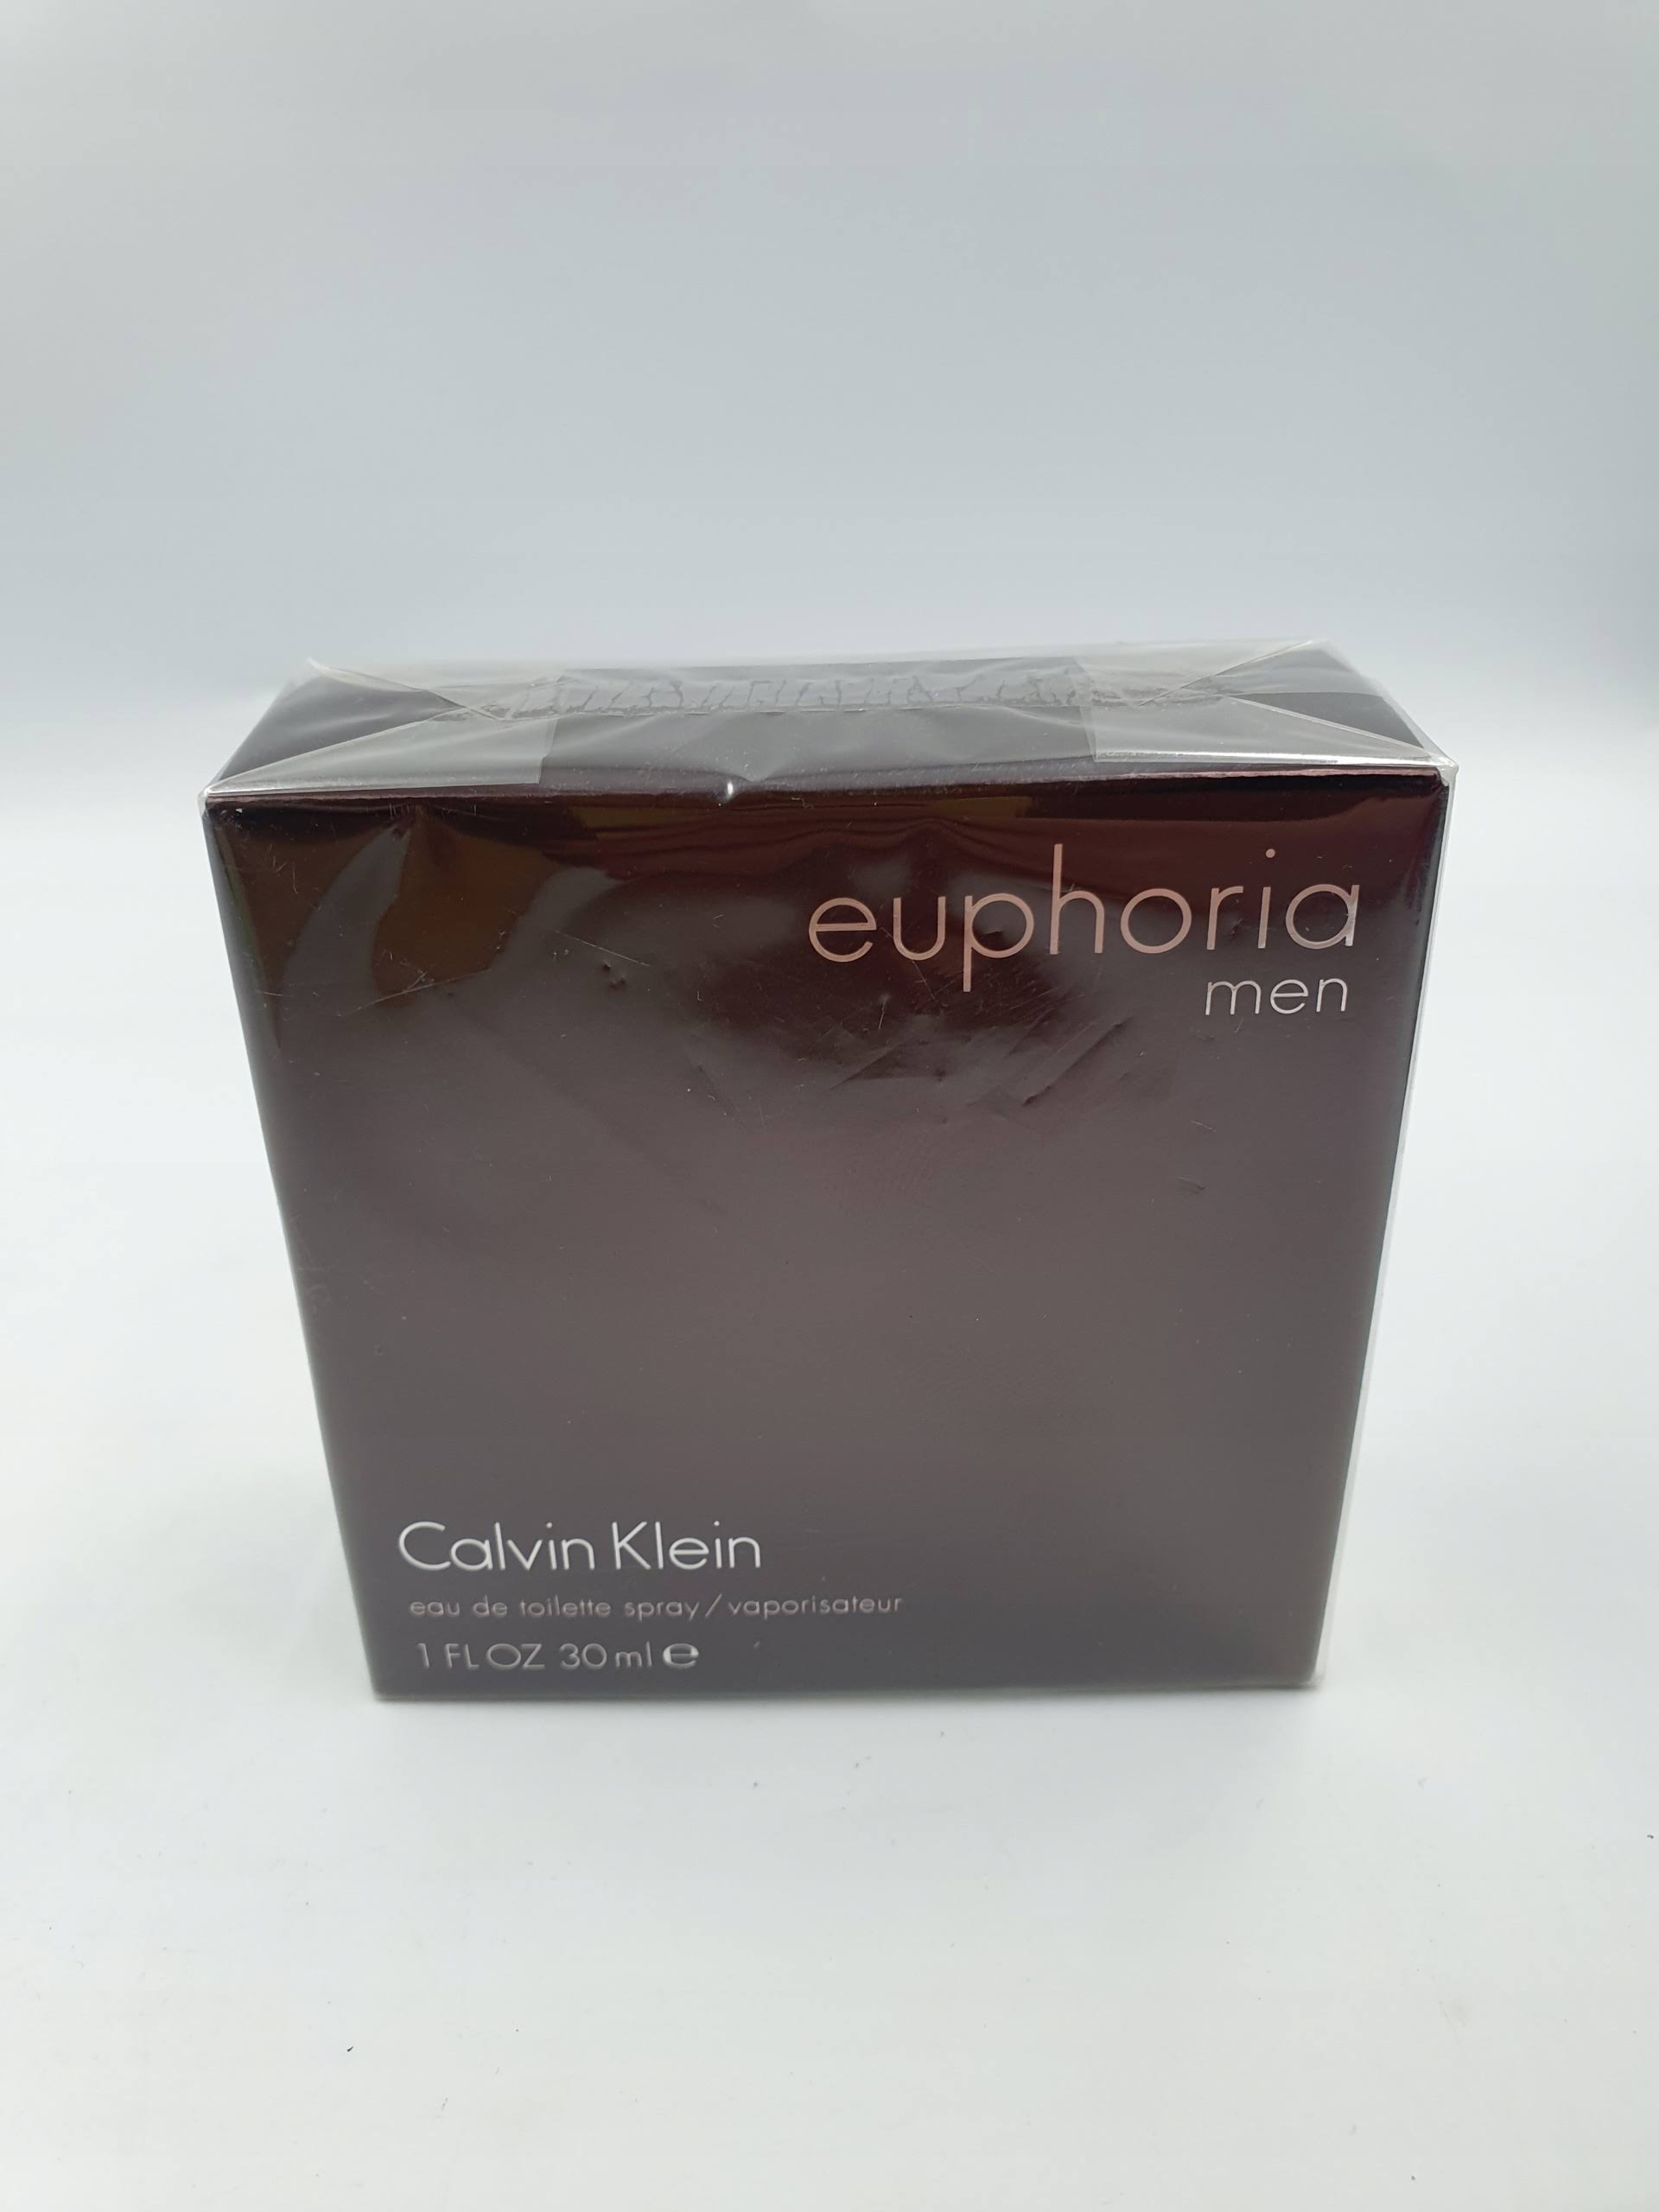 Calvin Klein Euphoria Men's Eau de Toilette Spray - 1oz